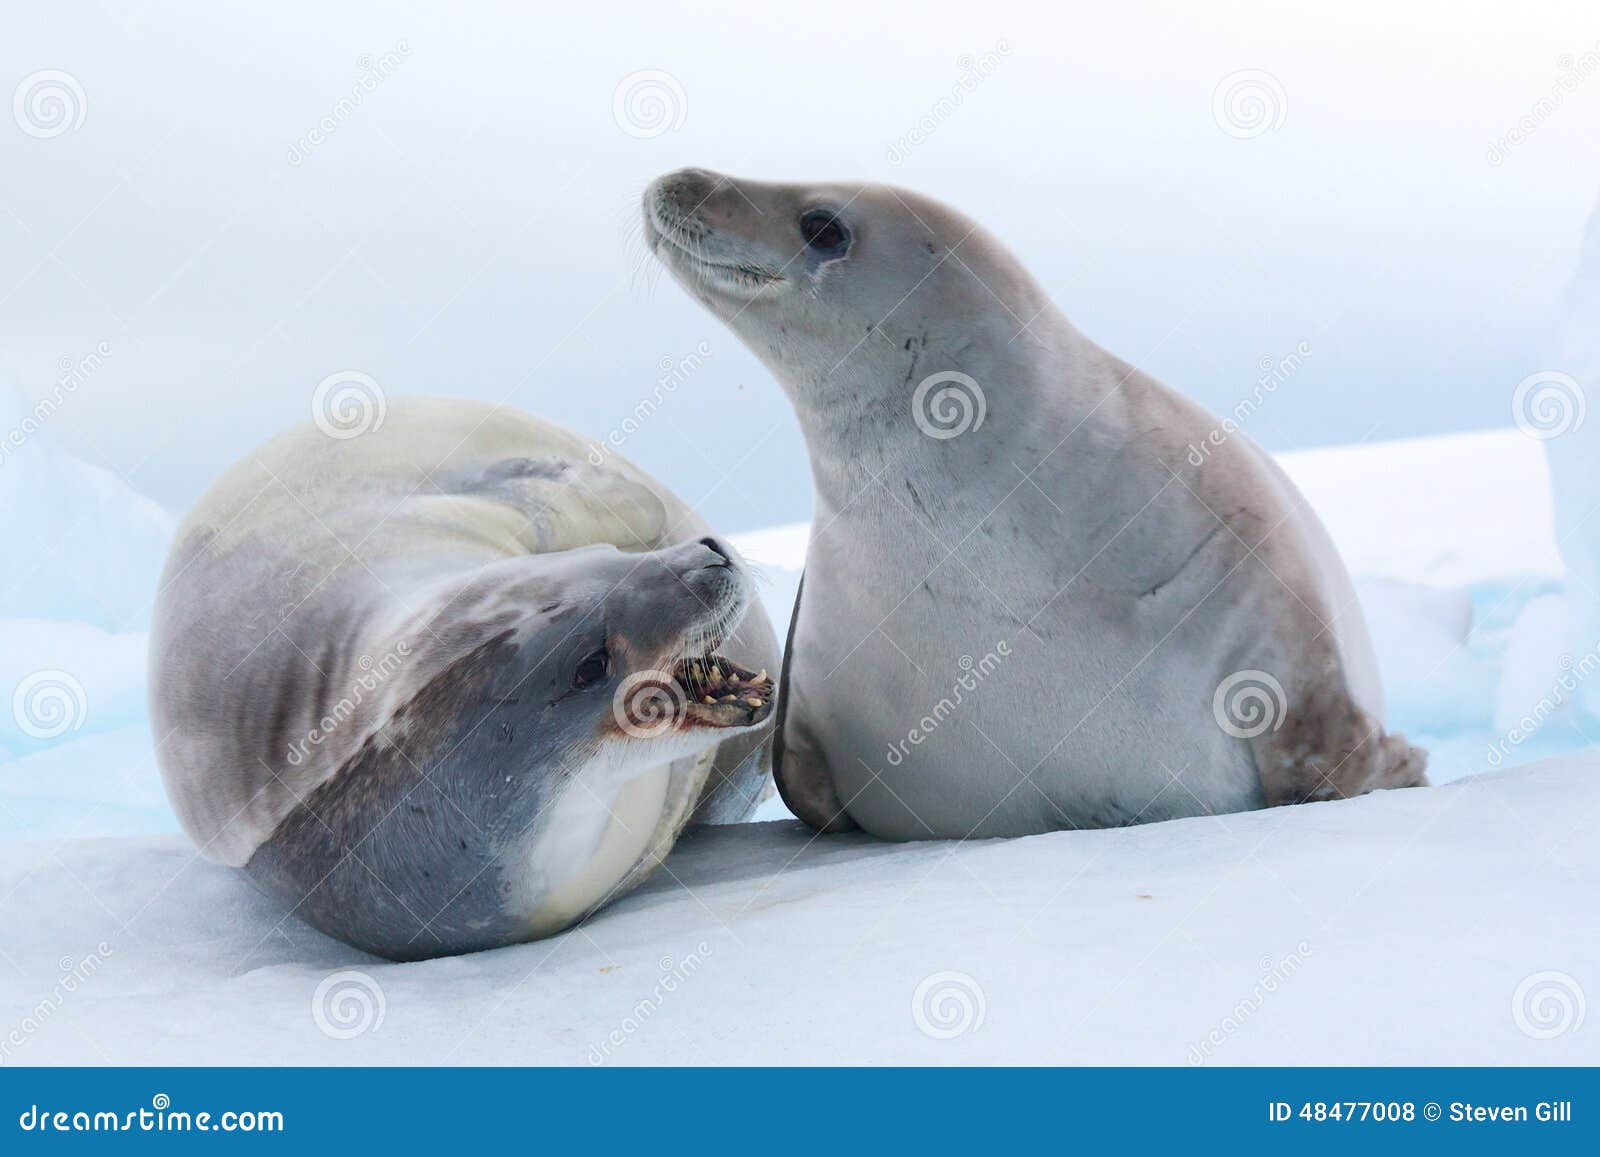 crabeater seals, antarctica